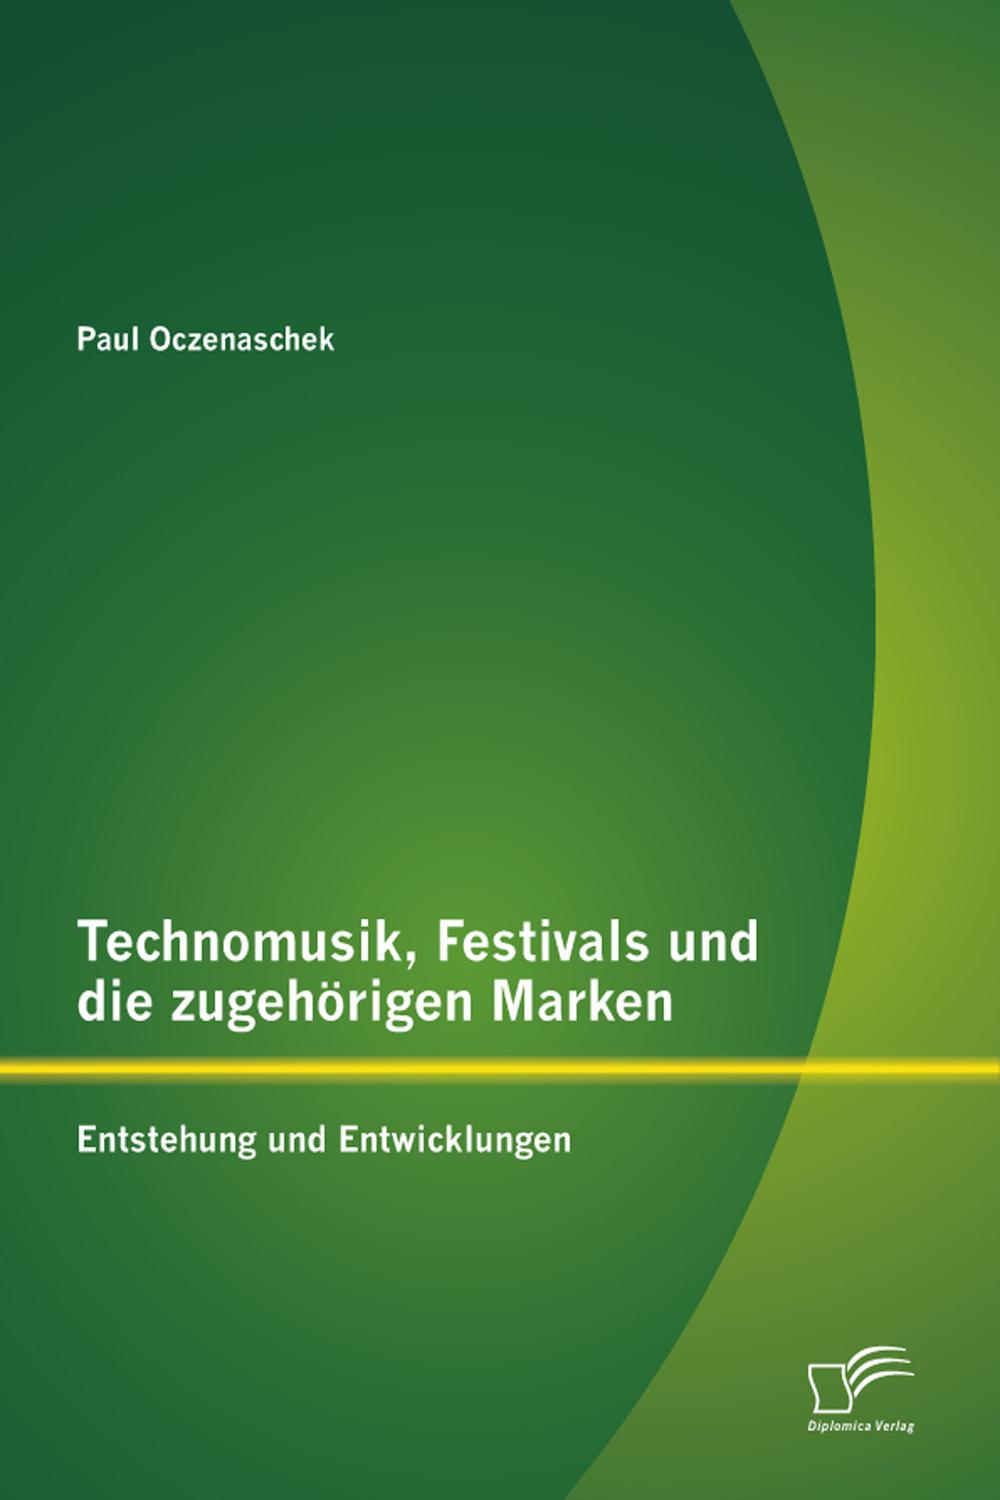 Technomusik, Festivals und die zugehörigen Marken: Entstehung und Entwicklungen - Paul Oczenaschek